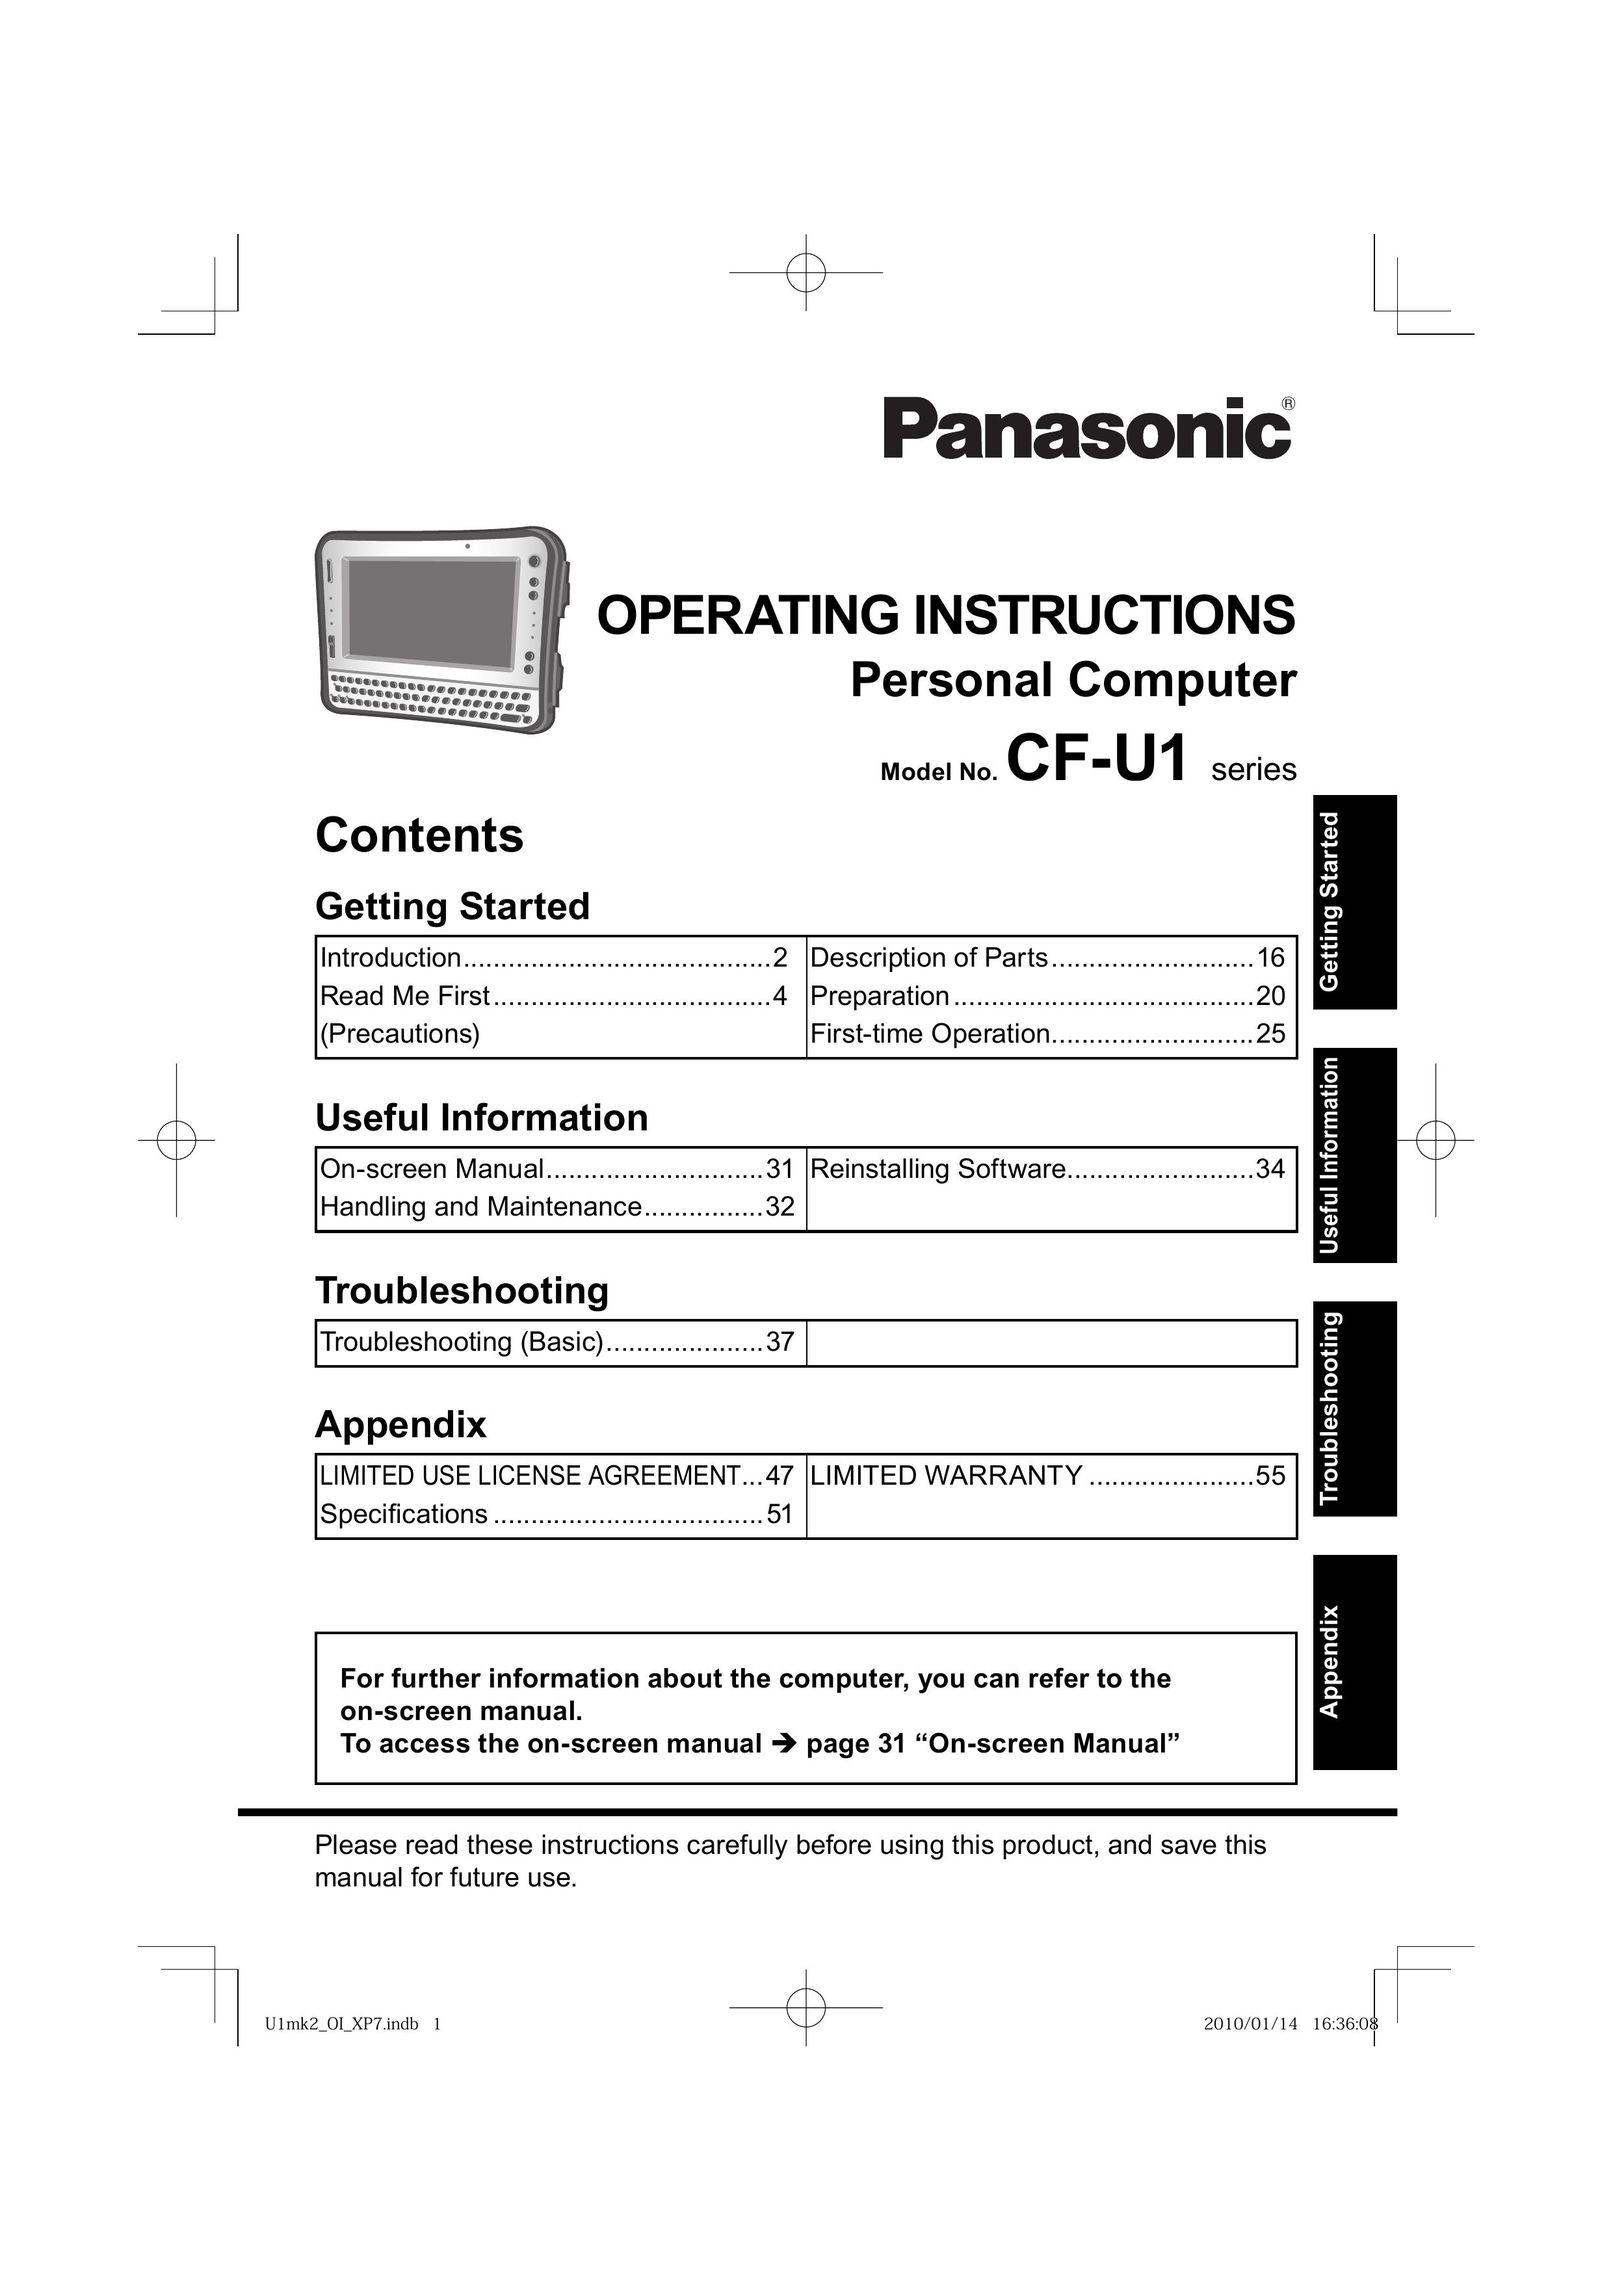 Panasonic CF-U1 Personal Computer User Manual